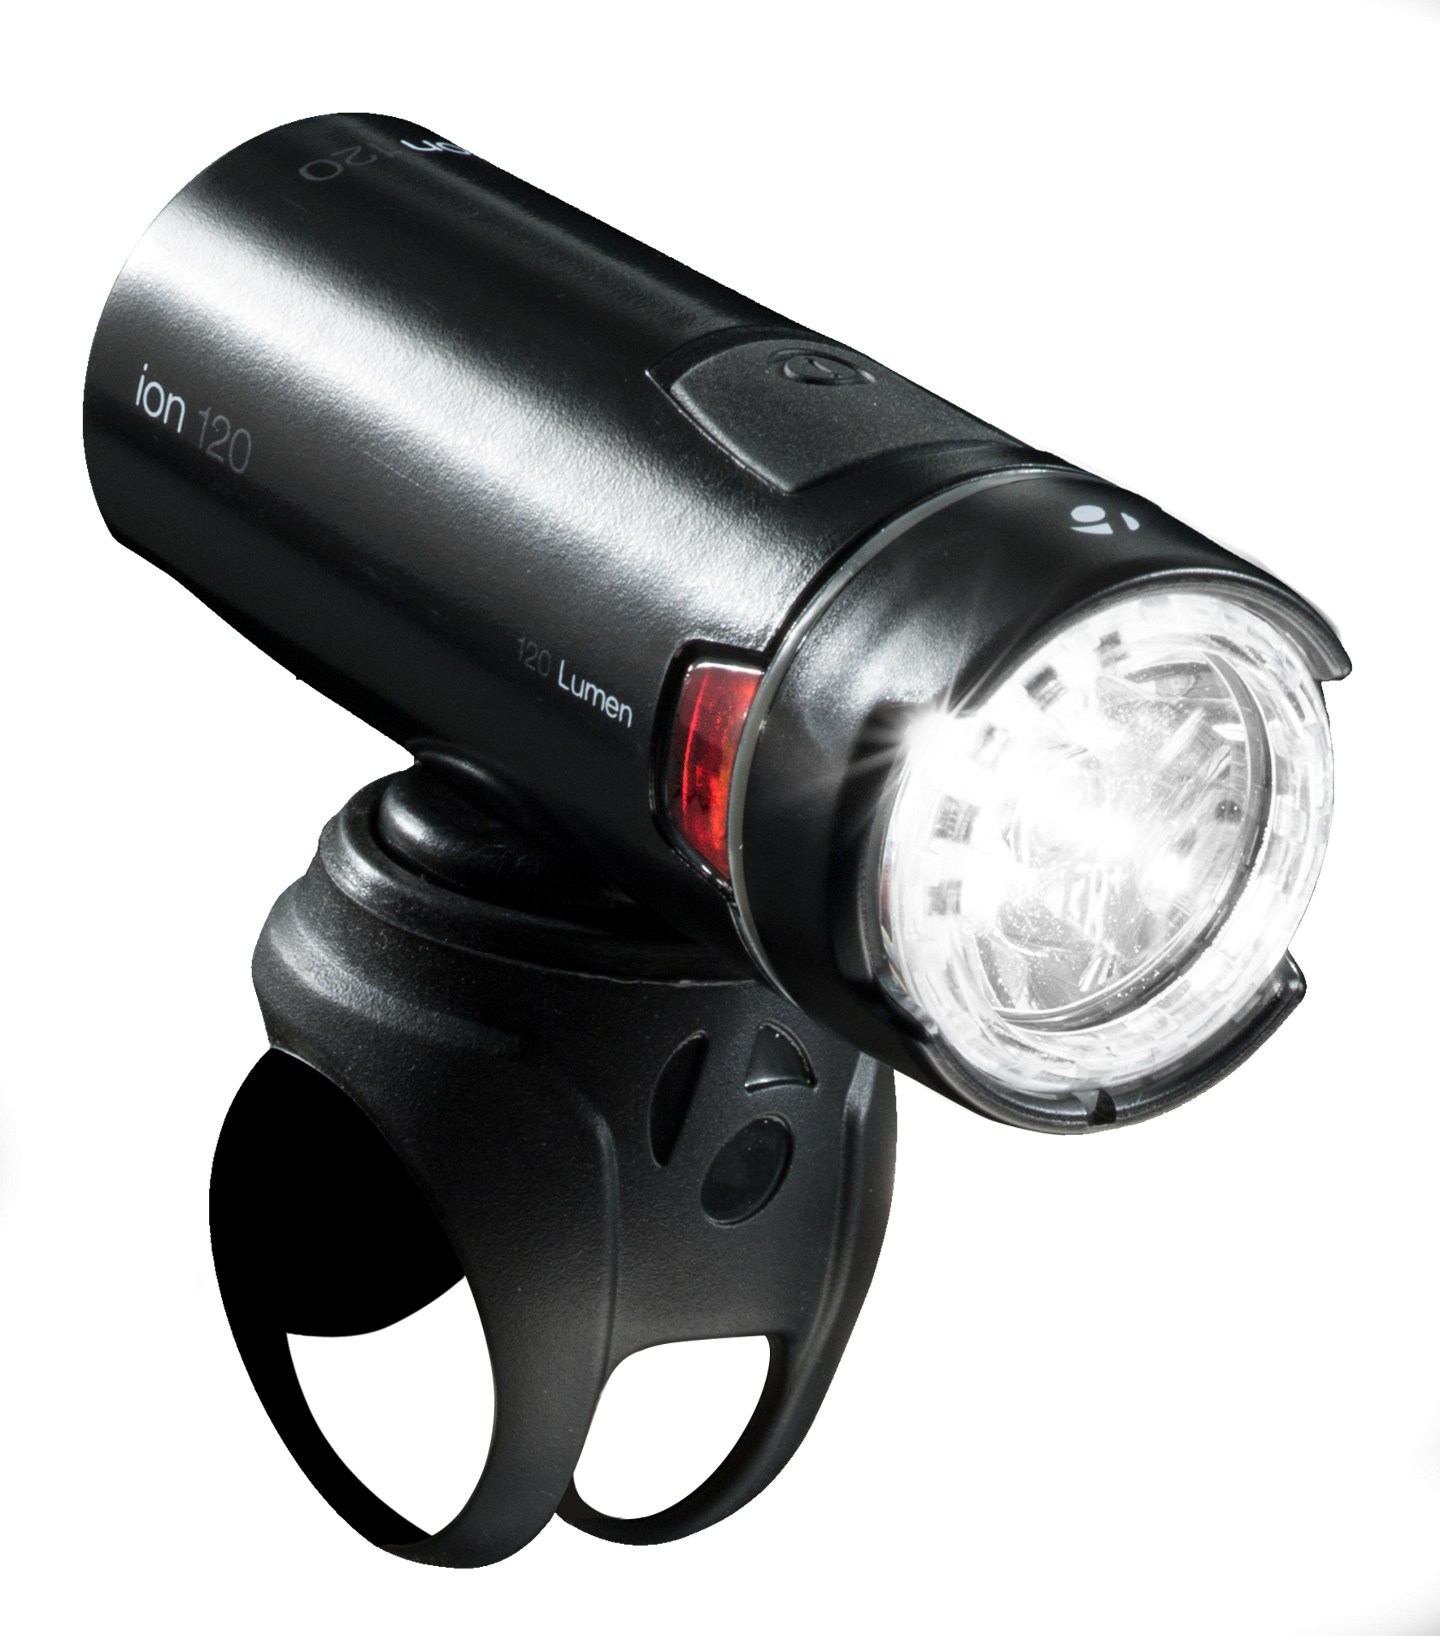 цена Передний велосипедный фонарь Ion 120 Bontrager, черный